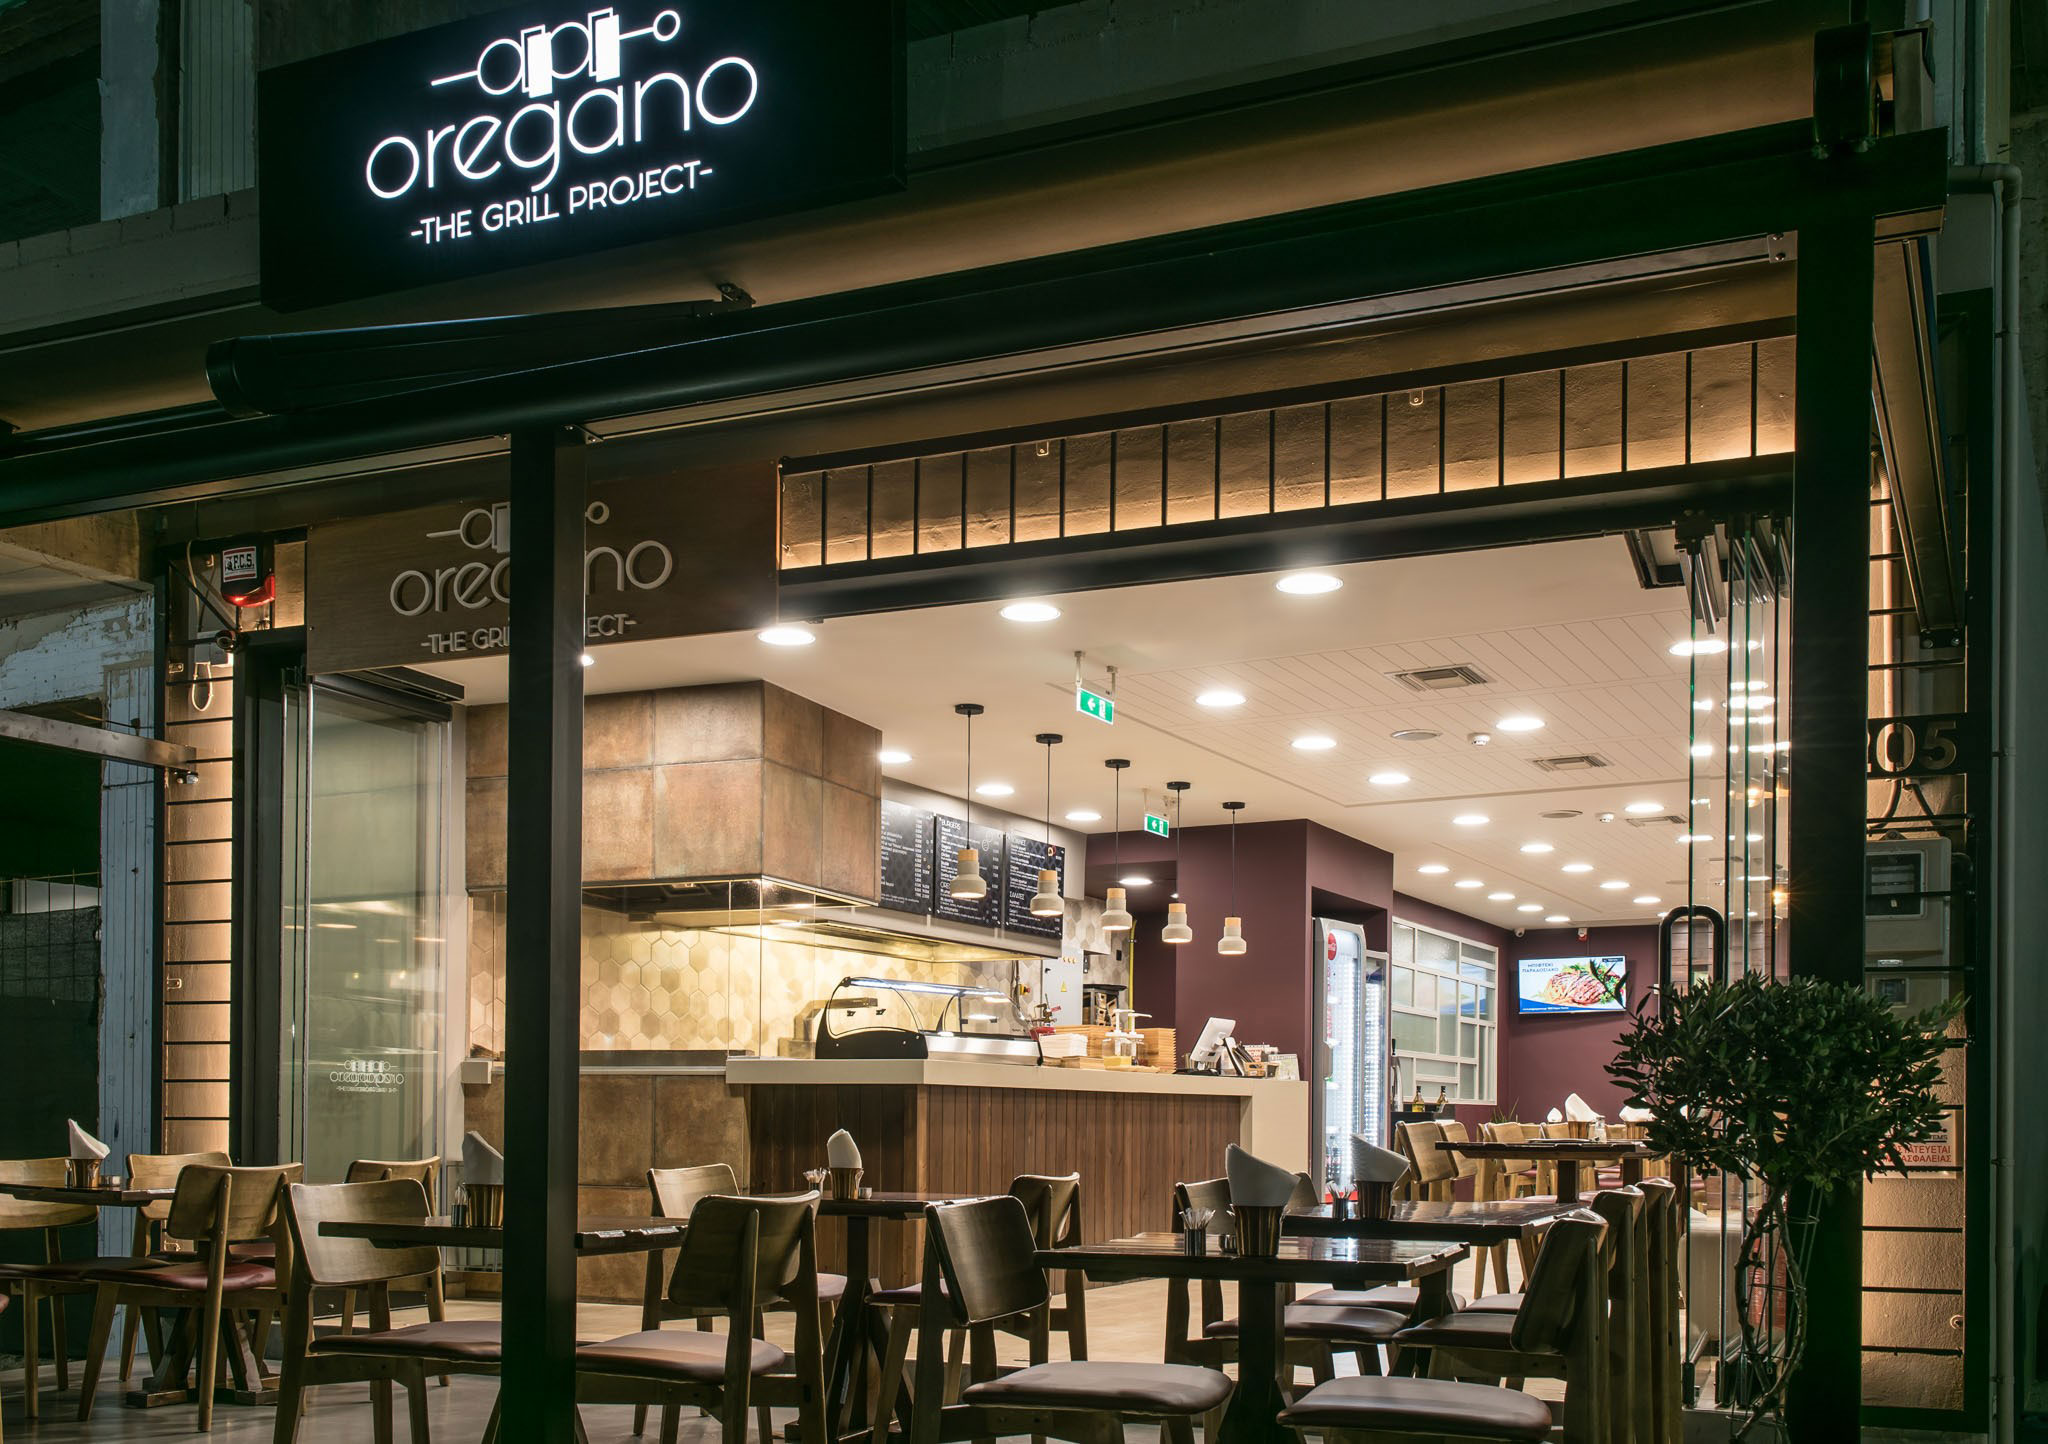 Oregano – The Grill Project